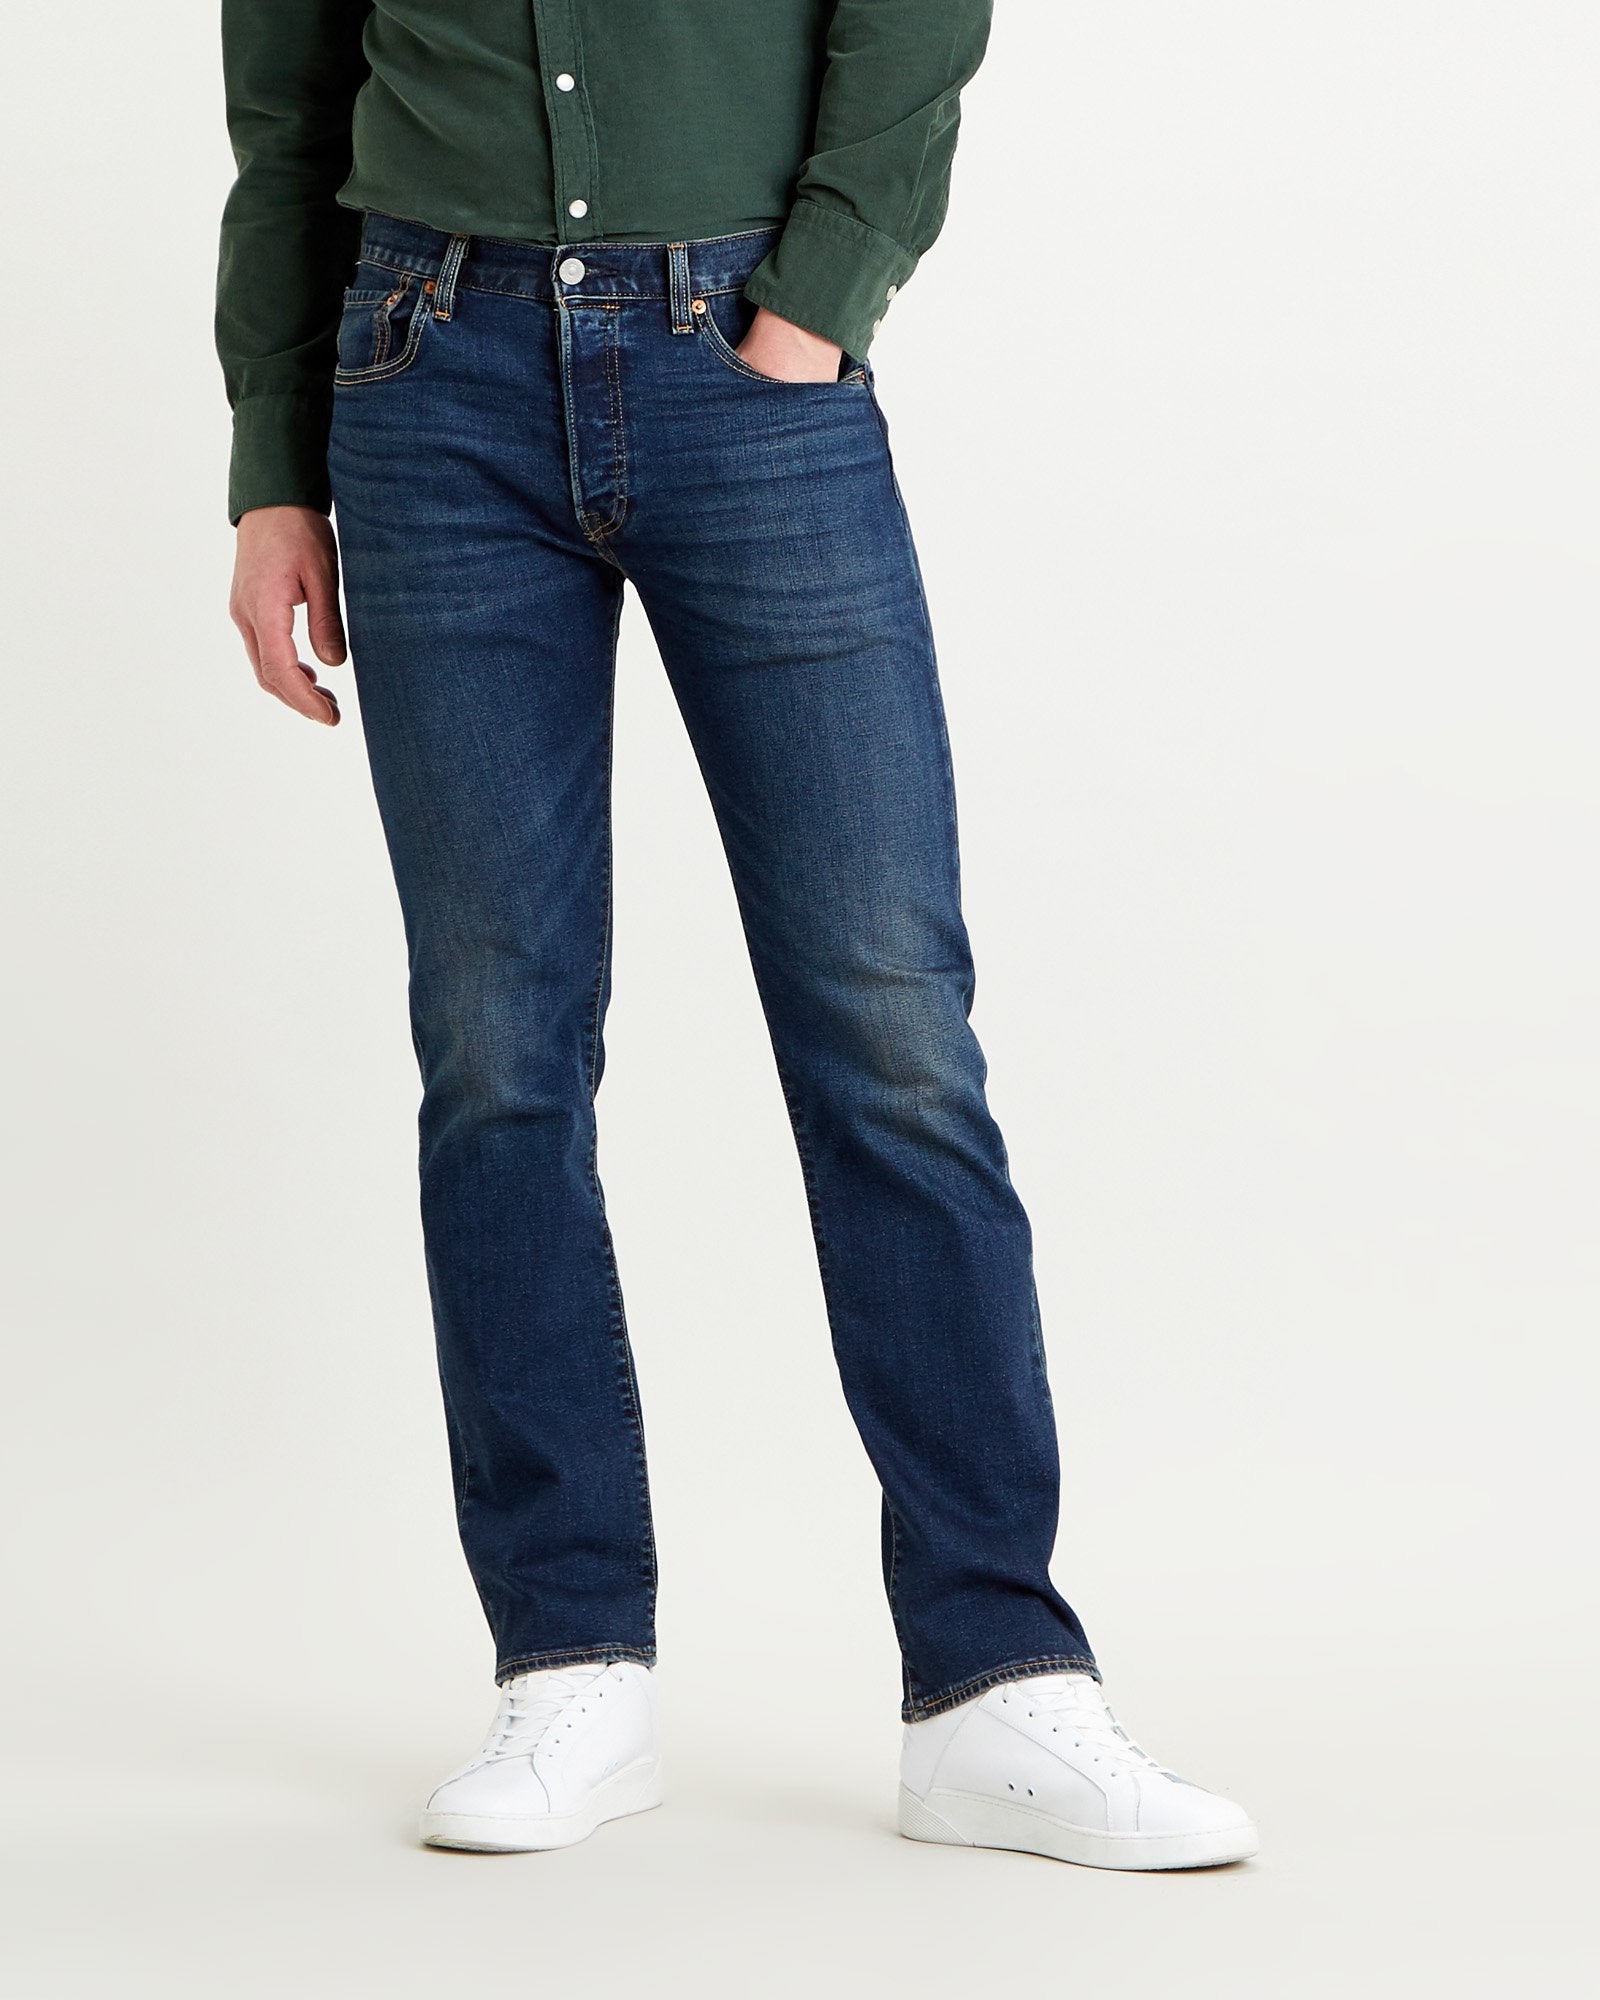 Levi's® 501 Original Regular Fit Mens Jeans - Block Crusher